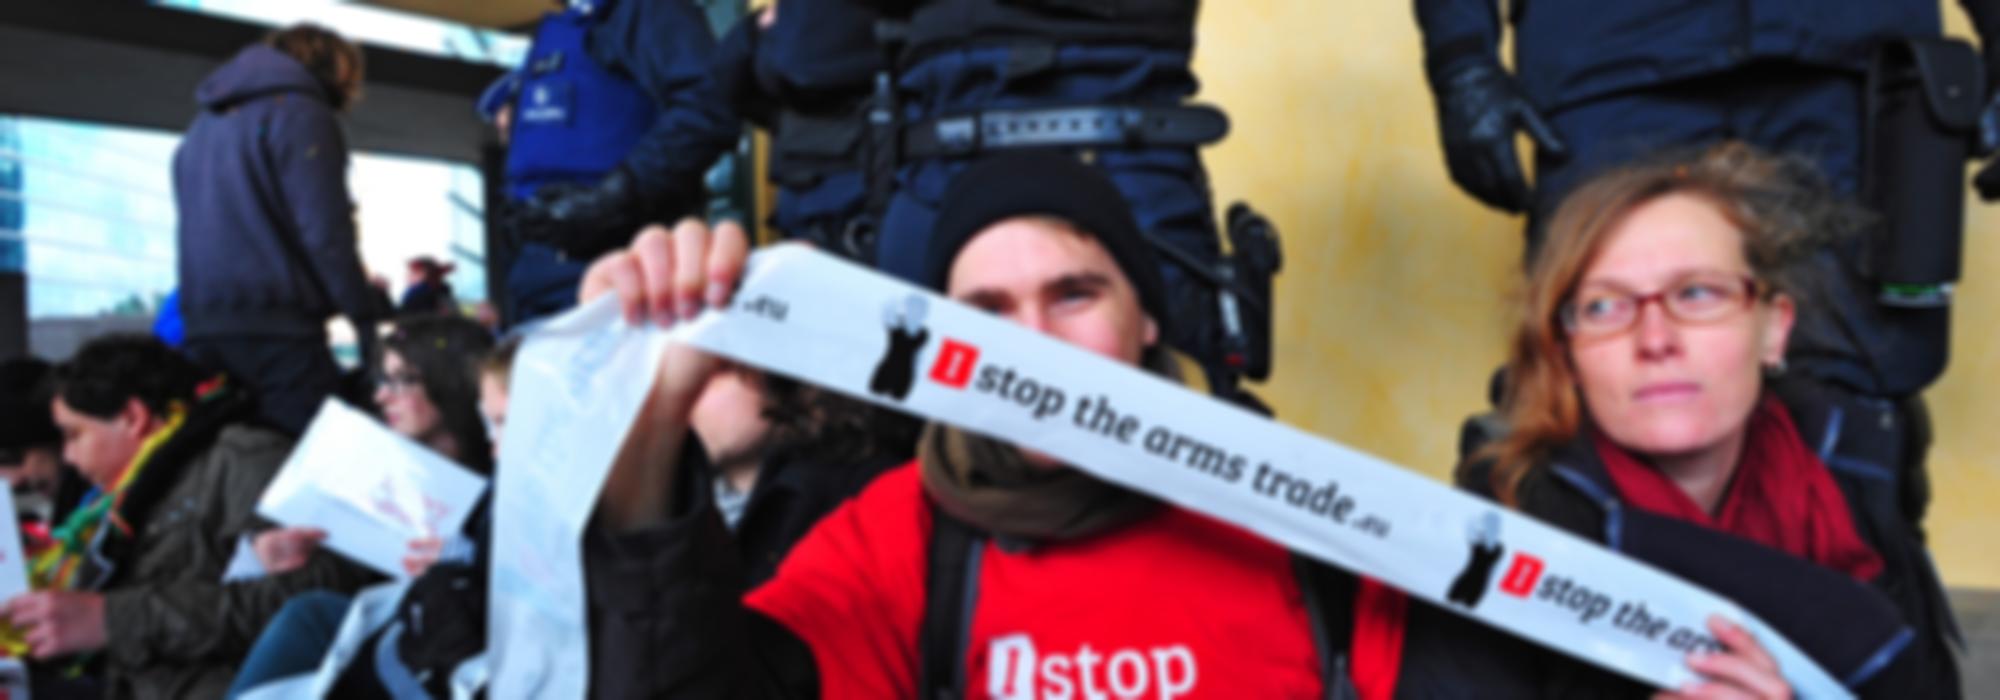 actiefoto met een aantal activisten aan een gebouw waarvoor de politie staat. Een activist houdt een lint met I Stop The Arms Trade vast. 